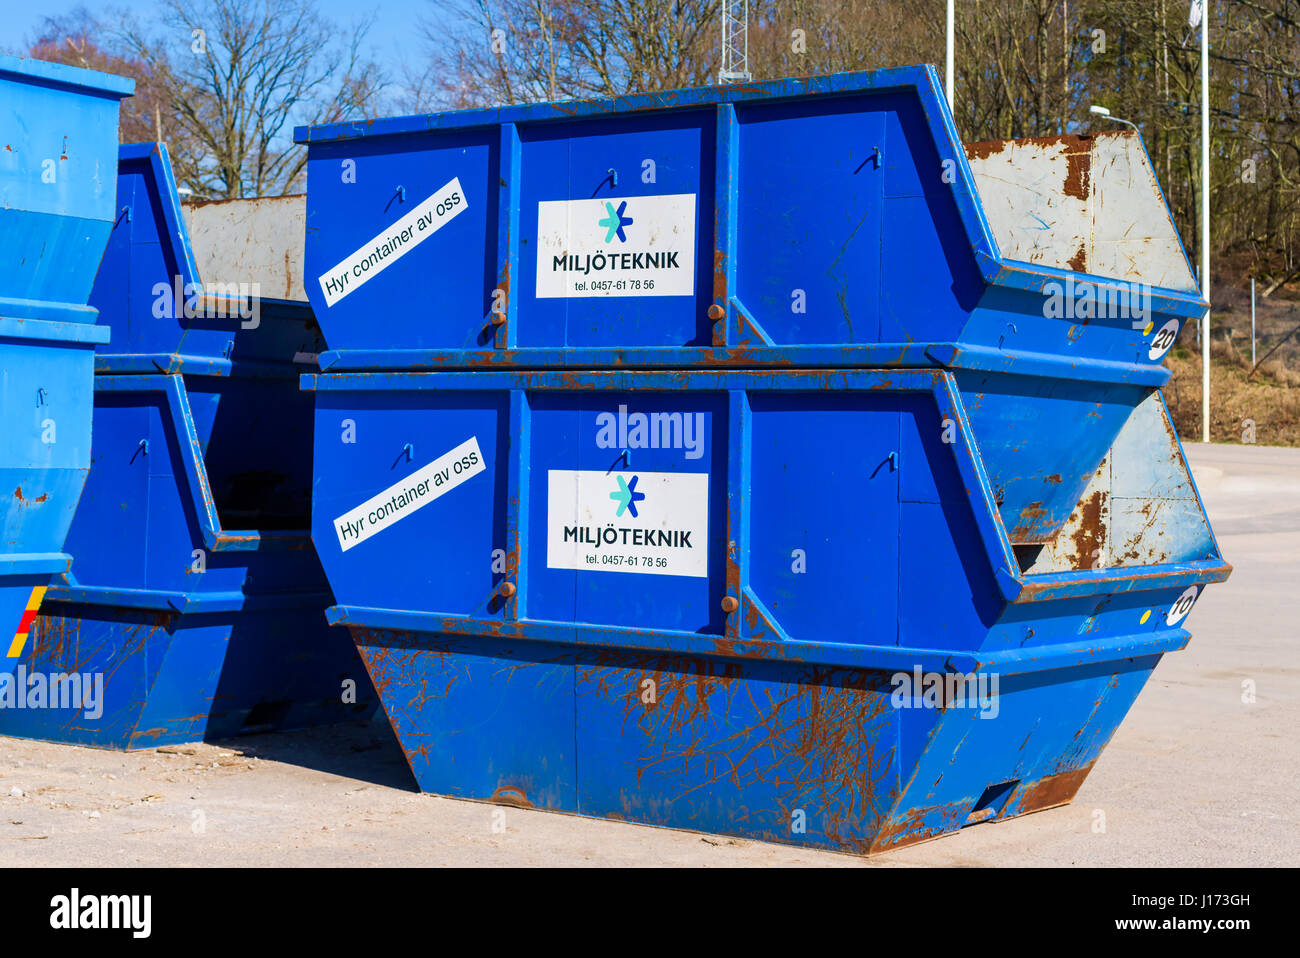 Ronneby, Schweden - 27. März 2017: Dokumentation der öffentlichen Abfallentsorgung Bahnhof. Stapel von blauen Vermietung Container für die Entsorgung. Mieten Sie Aufkleber sagen - Dataset Stockfoto